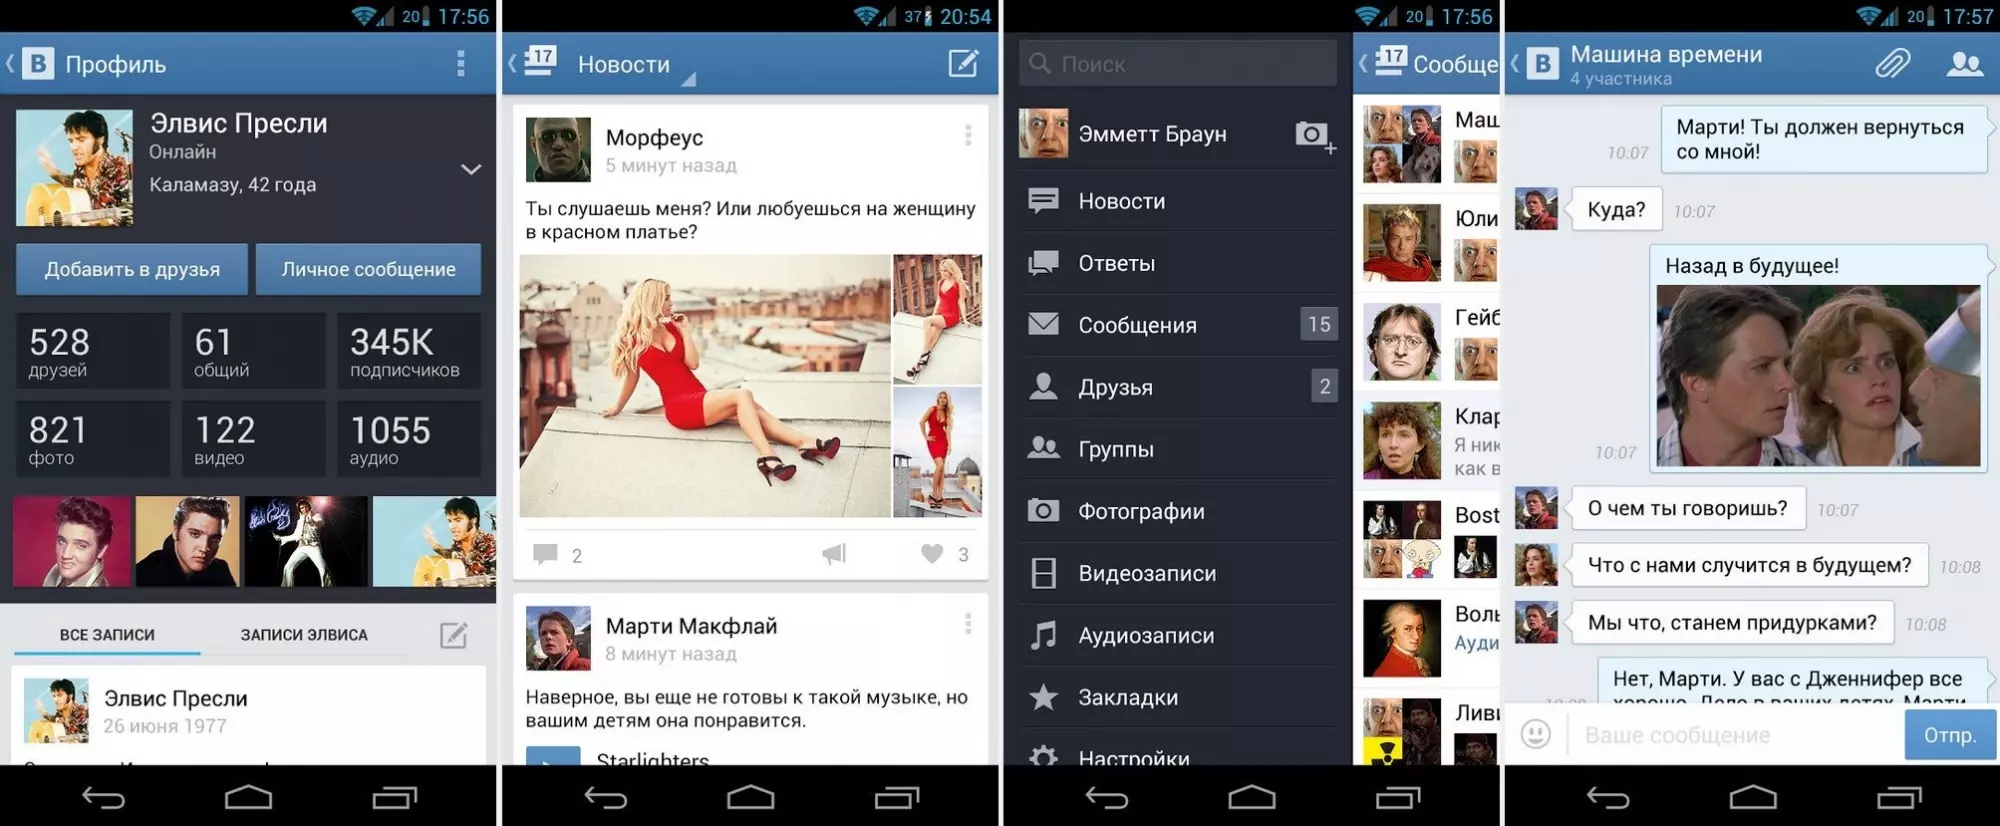 Скачать приложение ВКонтакте